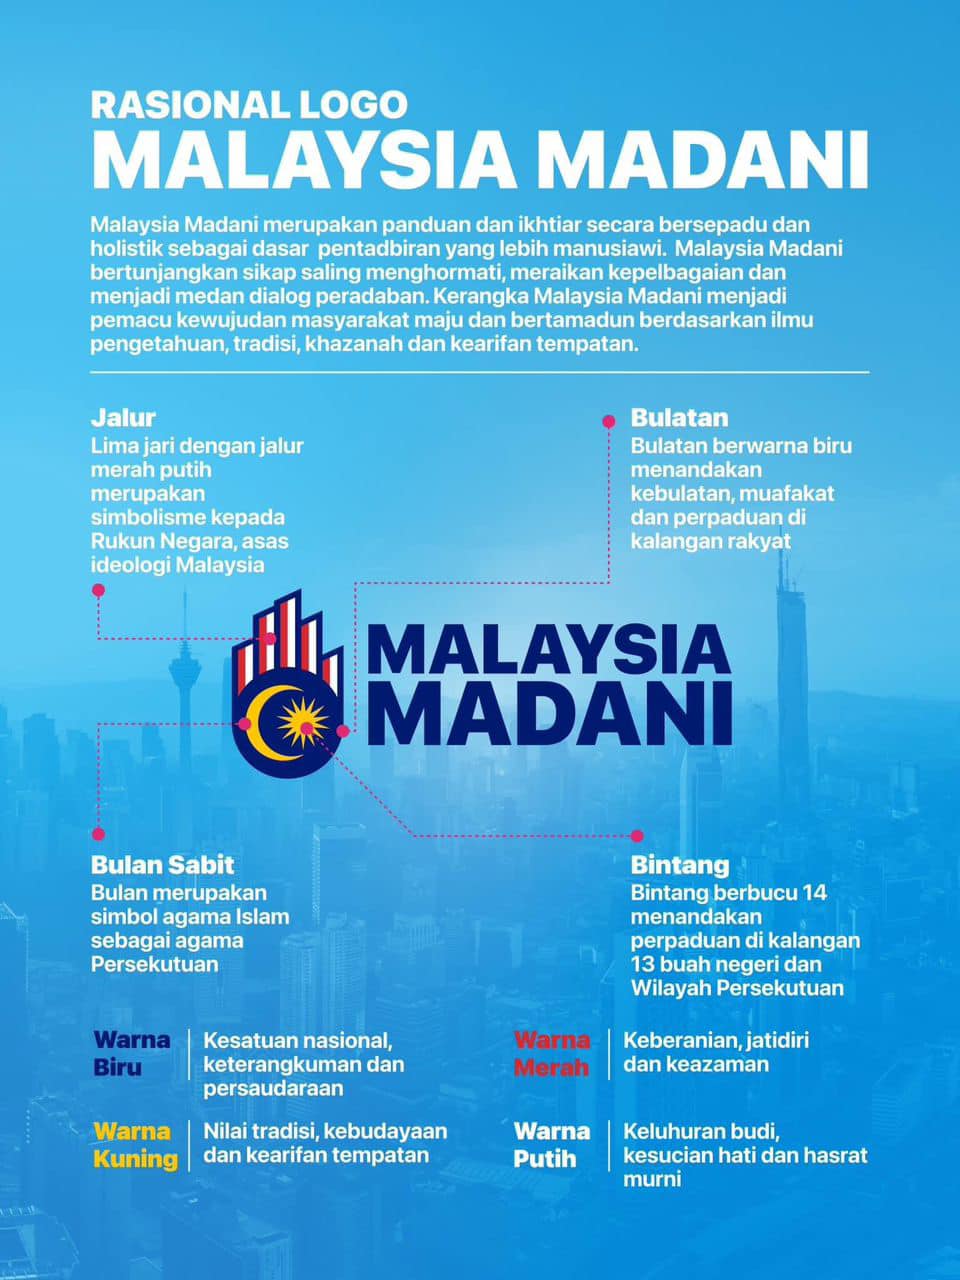 Rasional Logo Malaysia Madani